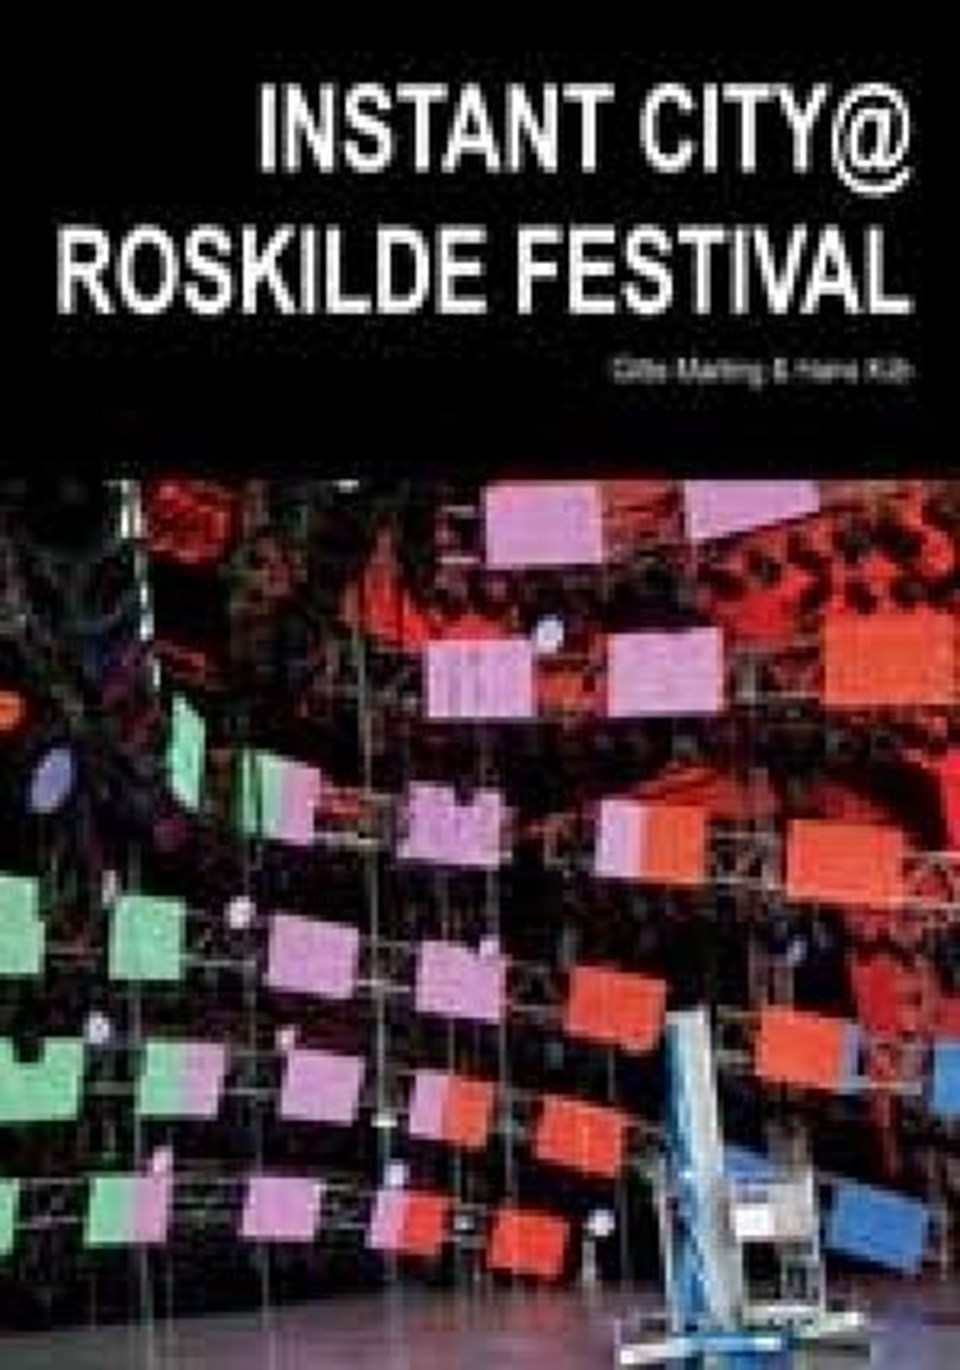 Instant city@Roskilde Festival